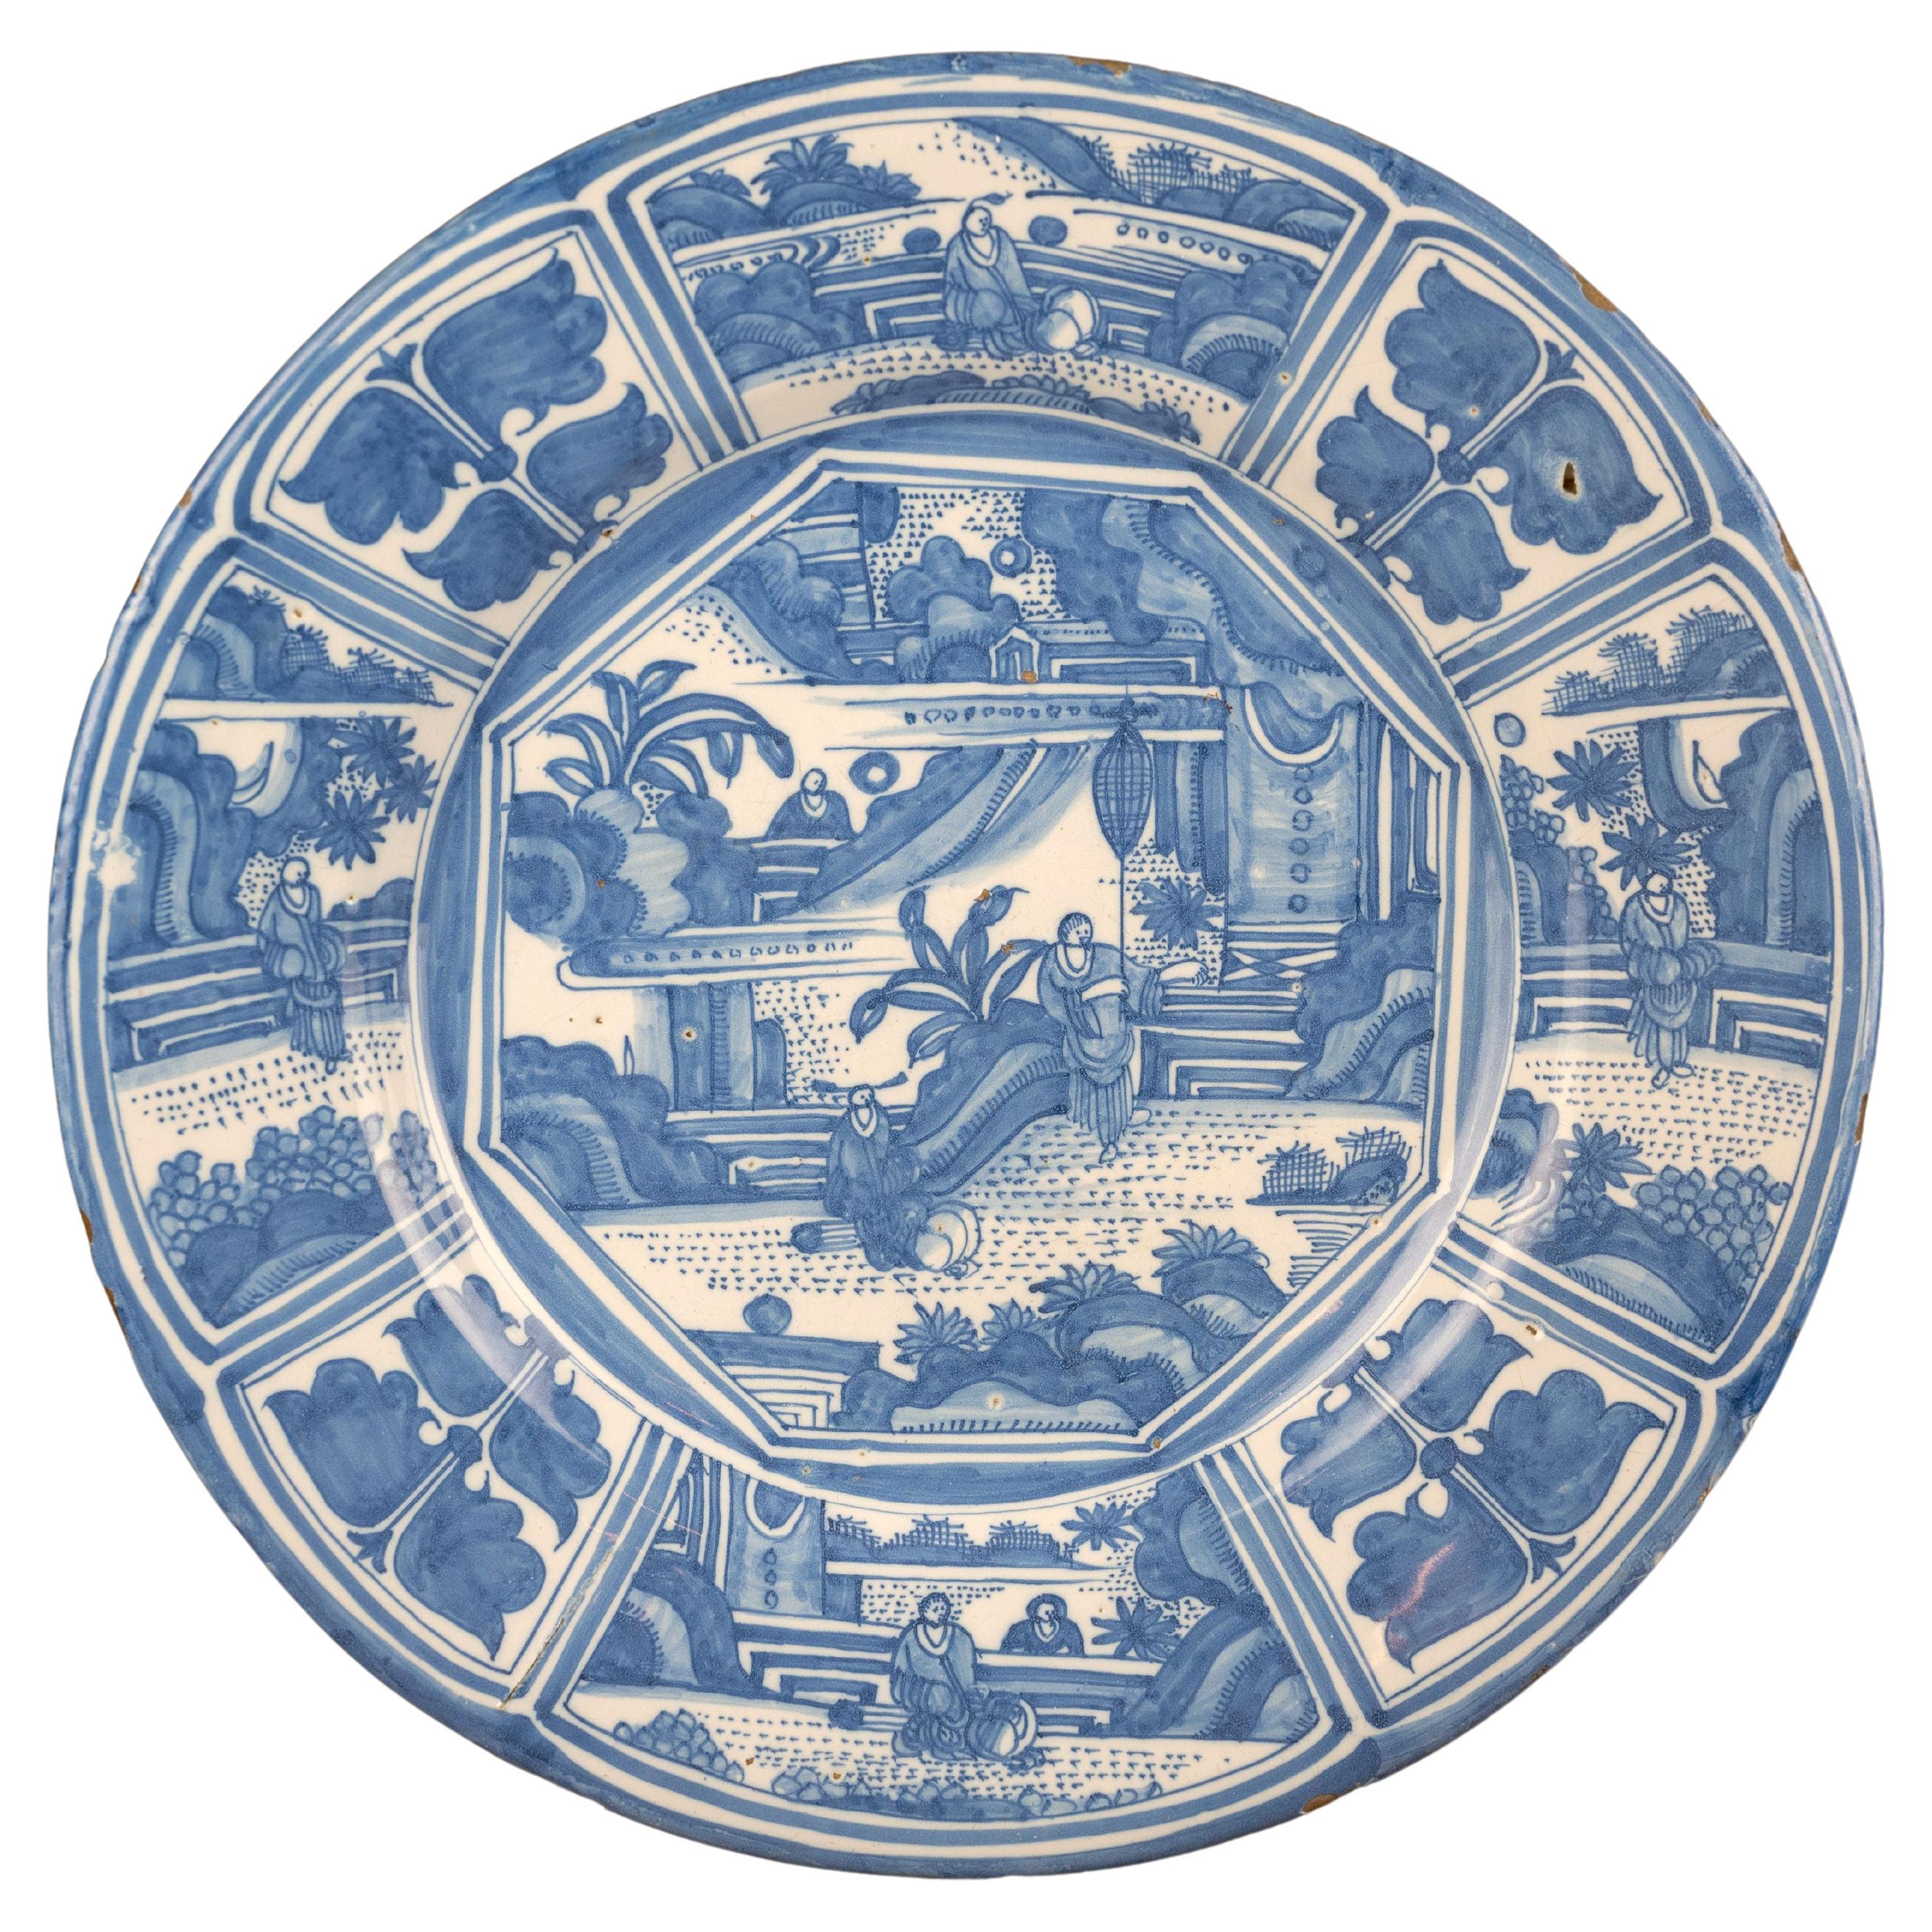 Grand plat de style chinois bleu et blanc en faïence de Delft, vers 1670 Figures chinoises